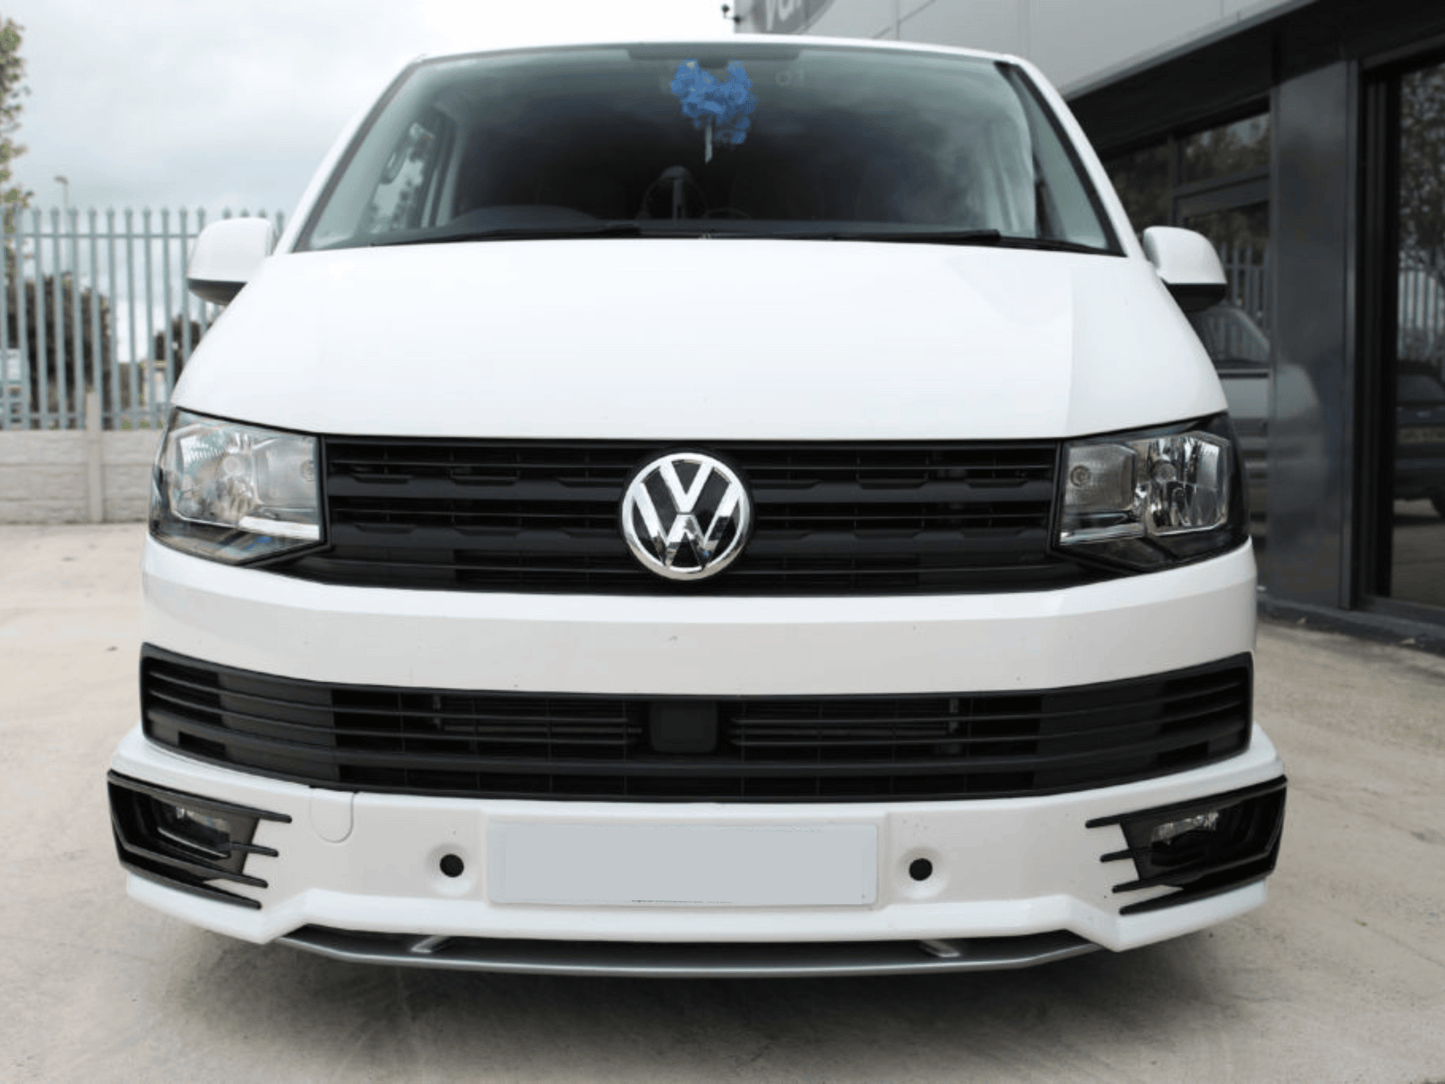 VW Transporter T6 Front Grille Trims (4Pcs) - Matte Black